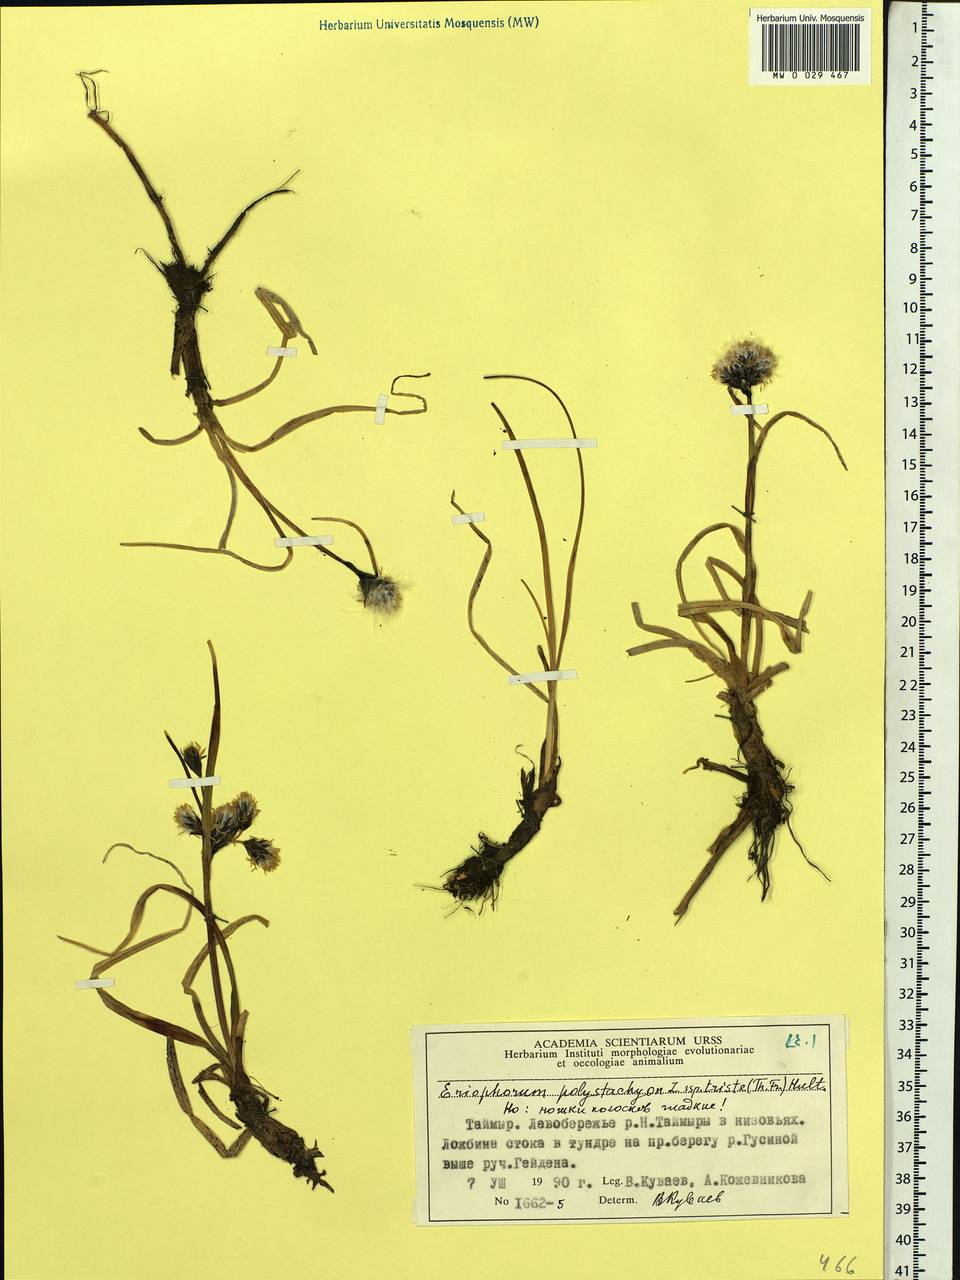 Eriophorum angustifolium subsp. triste (T.C.E.Fr.) Hultén, Siberia, Central Siberia (S3) (Russia)